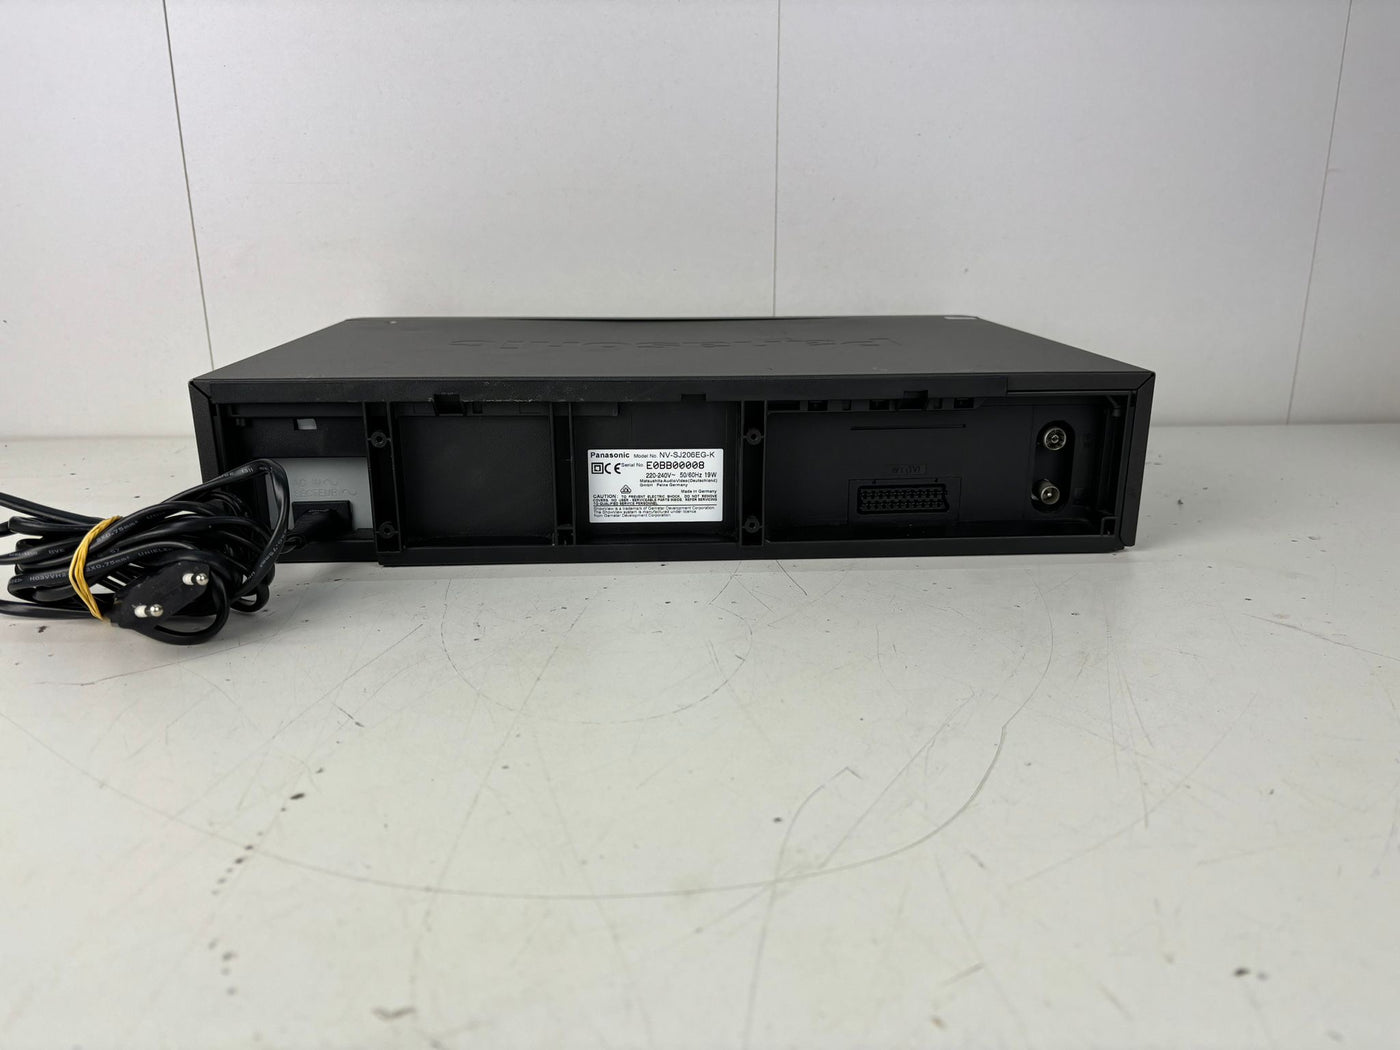 Panasonic NV-SJ206 Video Cassette Recorder | Super Drive